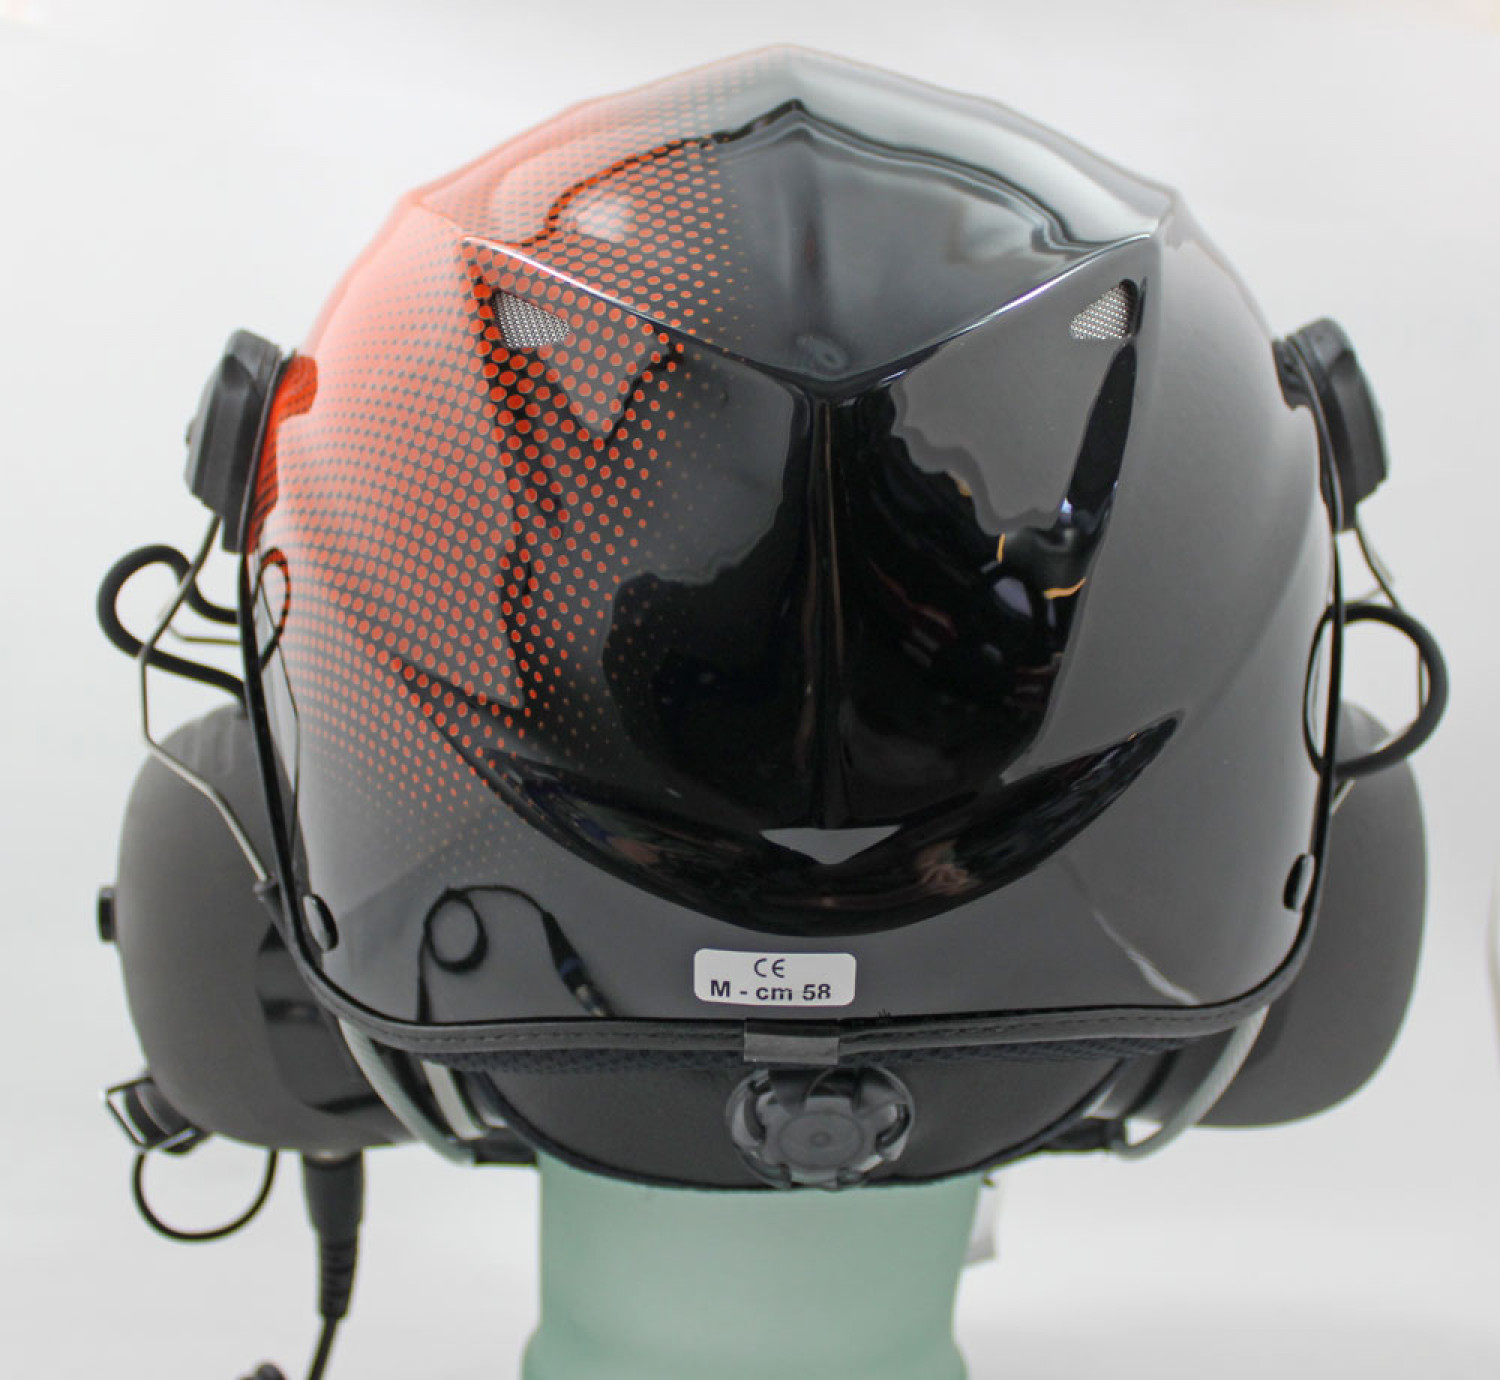 SOLAR X2, UL-Helm, orange (schwarz/orange)